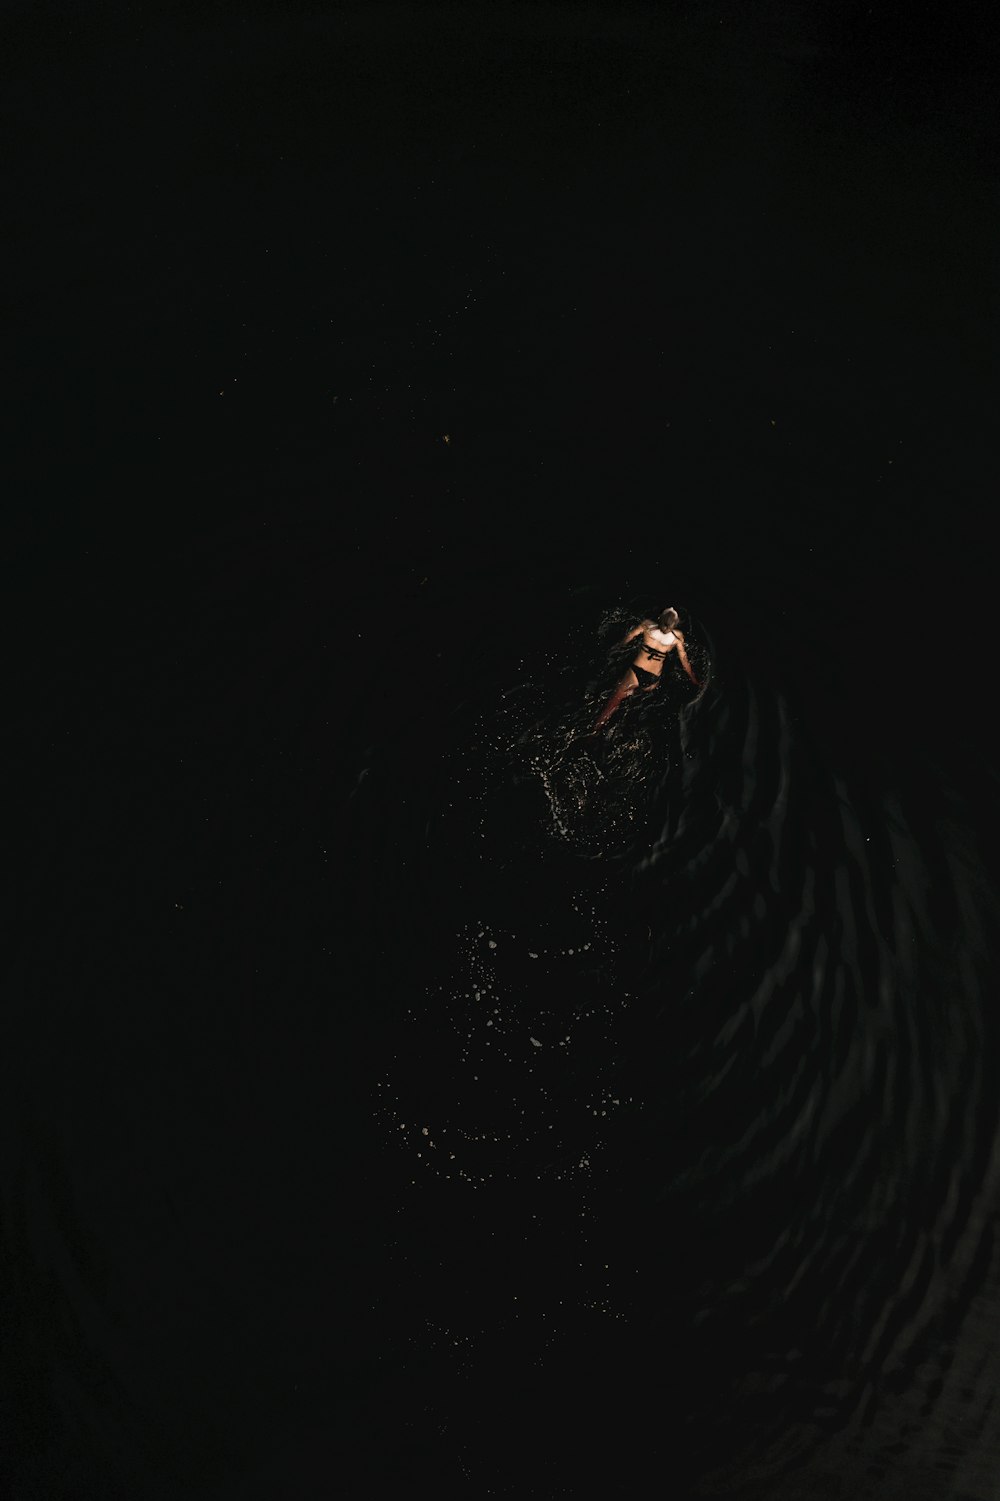 eine Person, die nachts im Wasser schwimmt